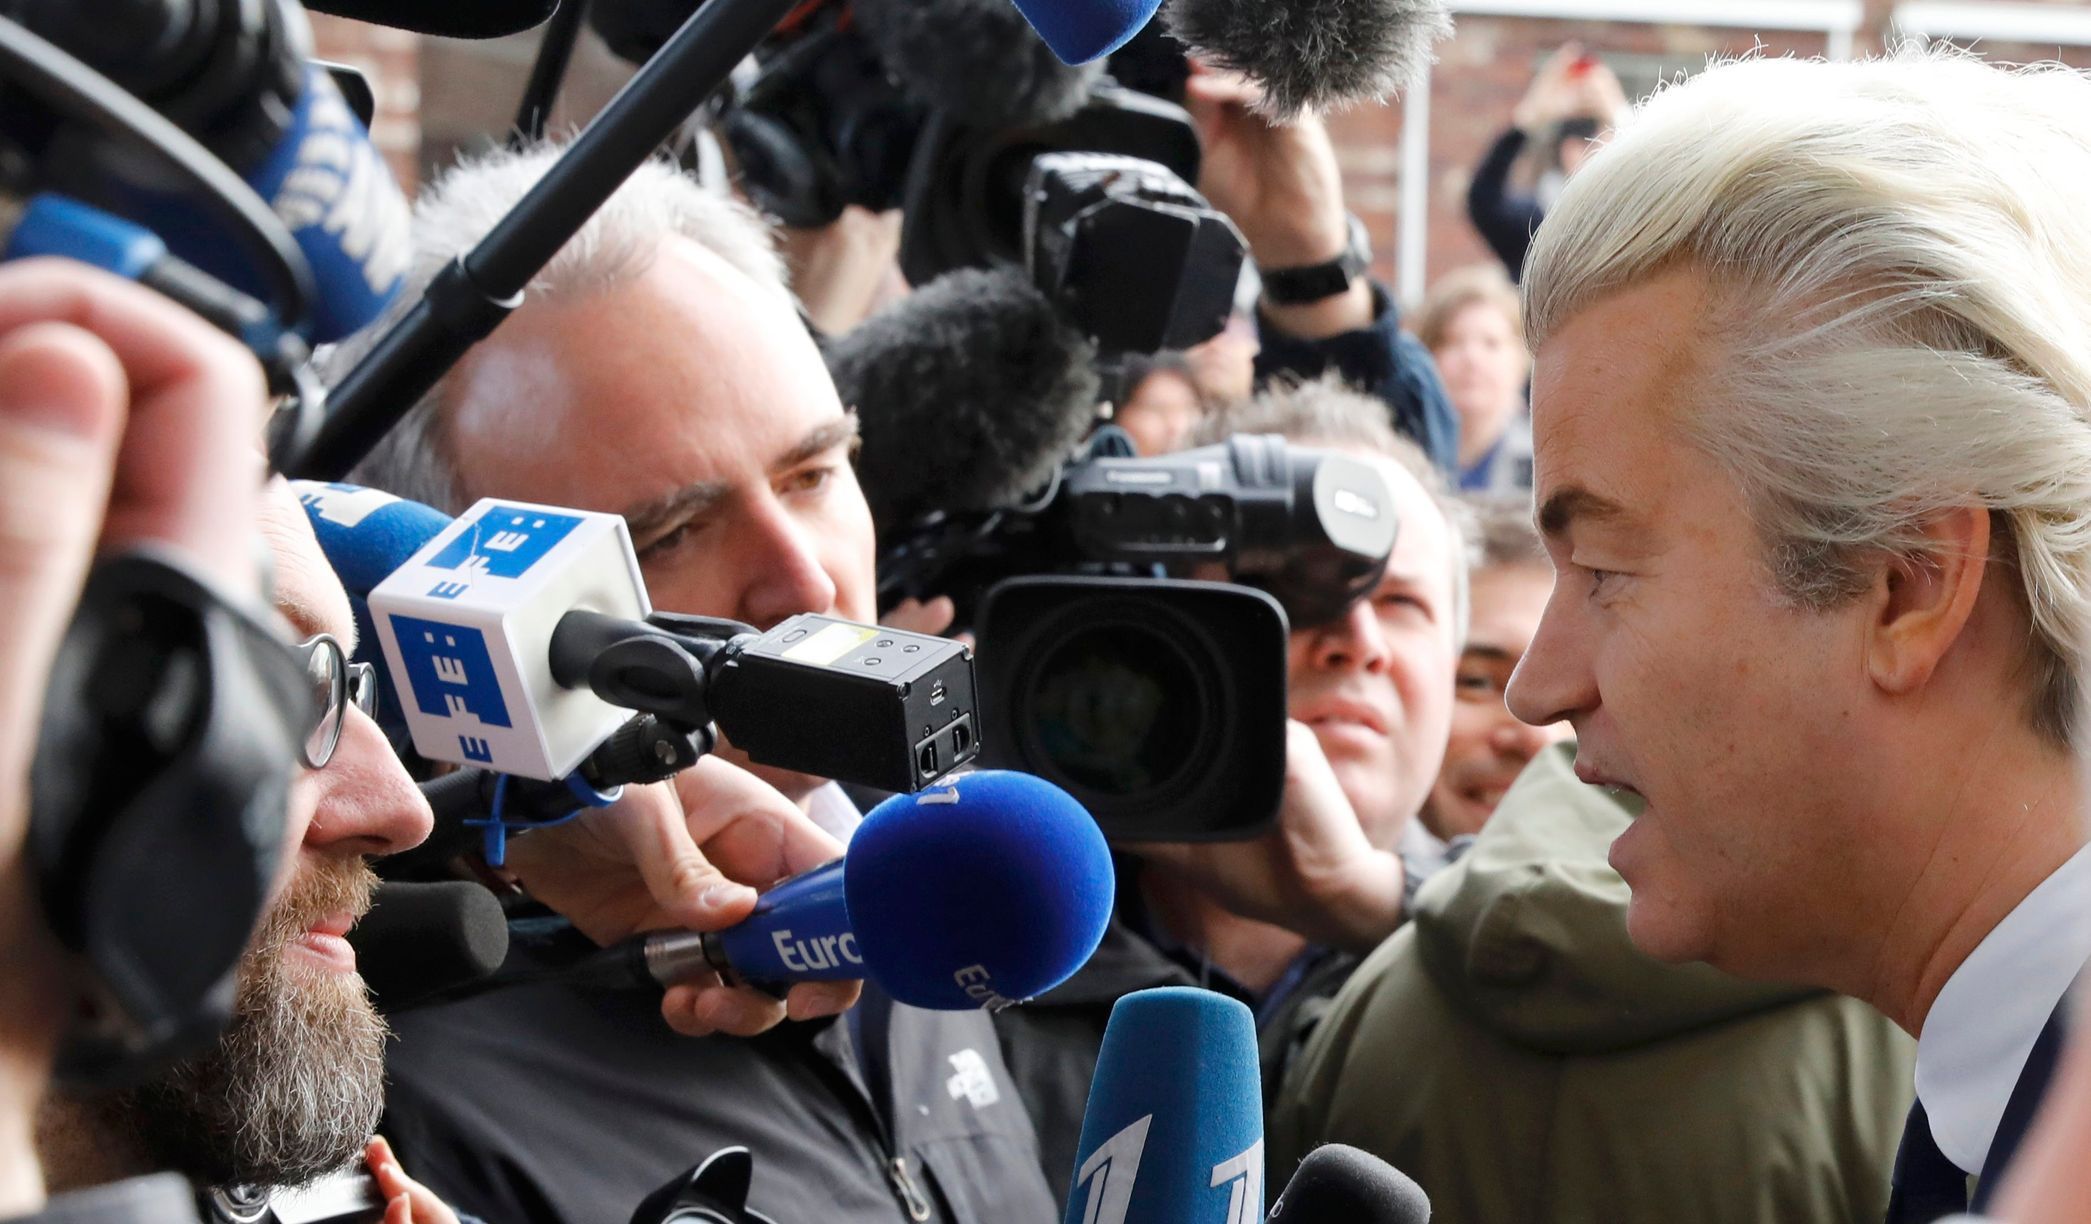 Wilders před novináři